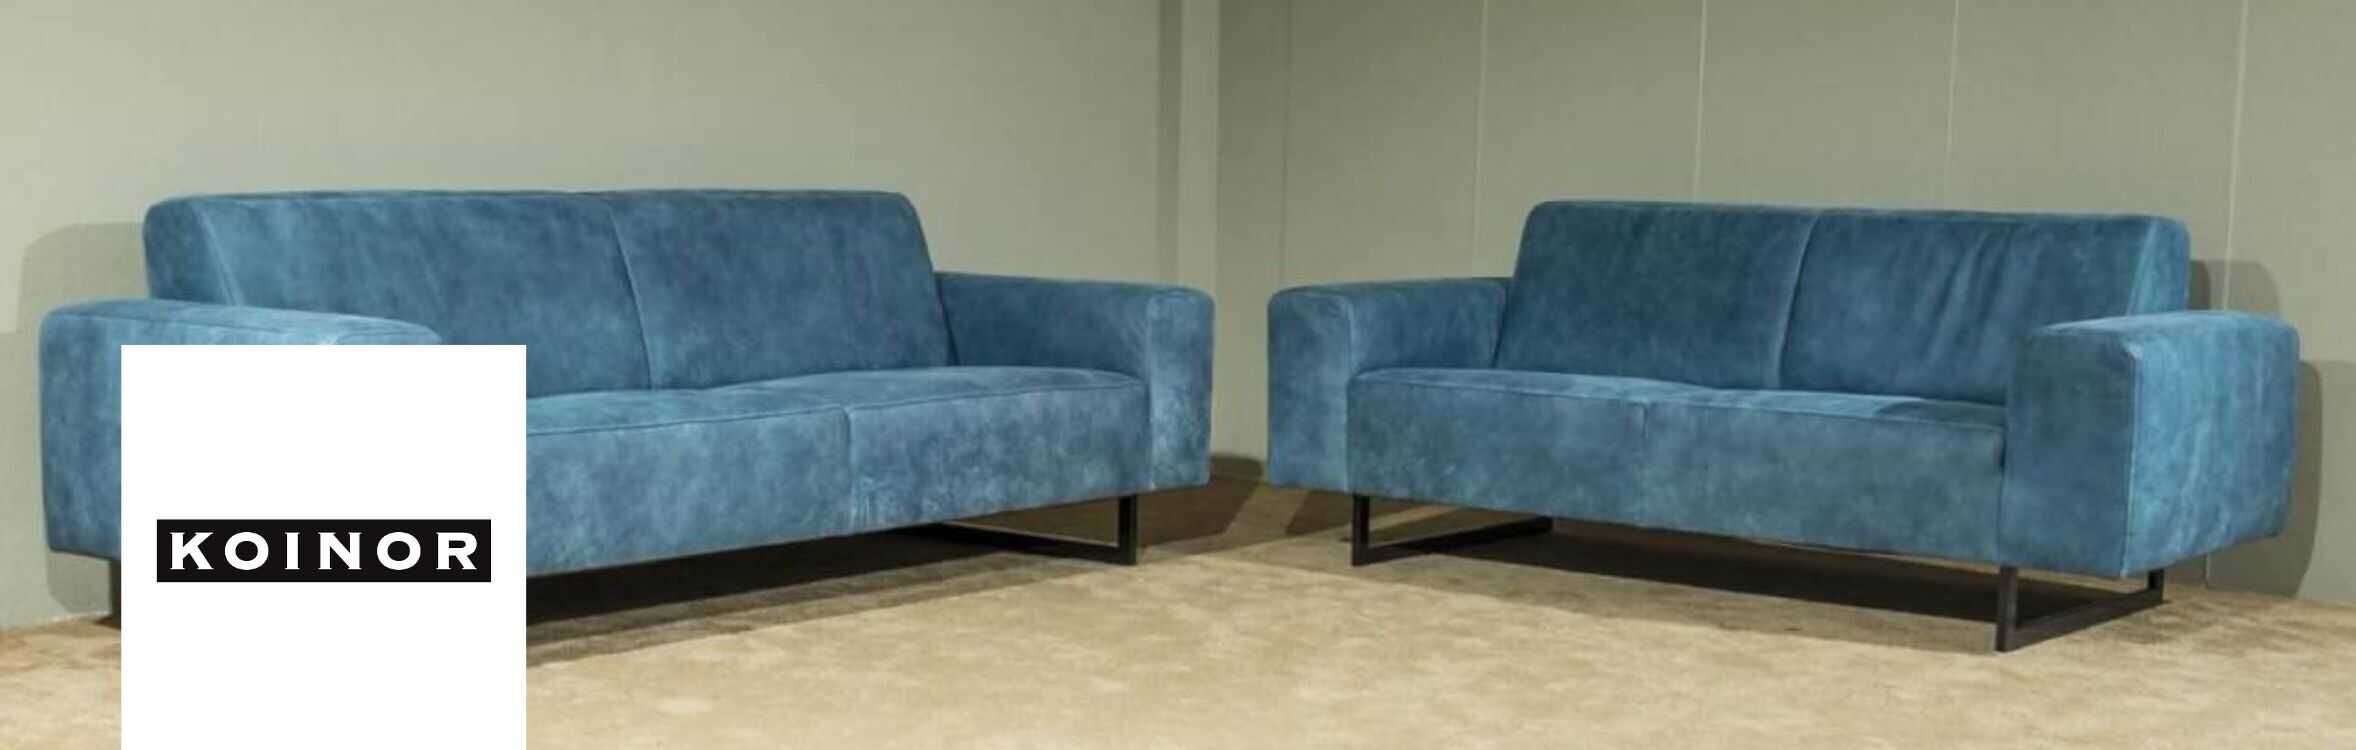 Möbel von Koinor online kaufen